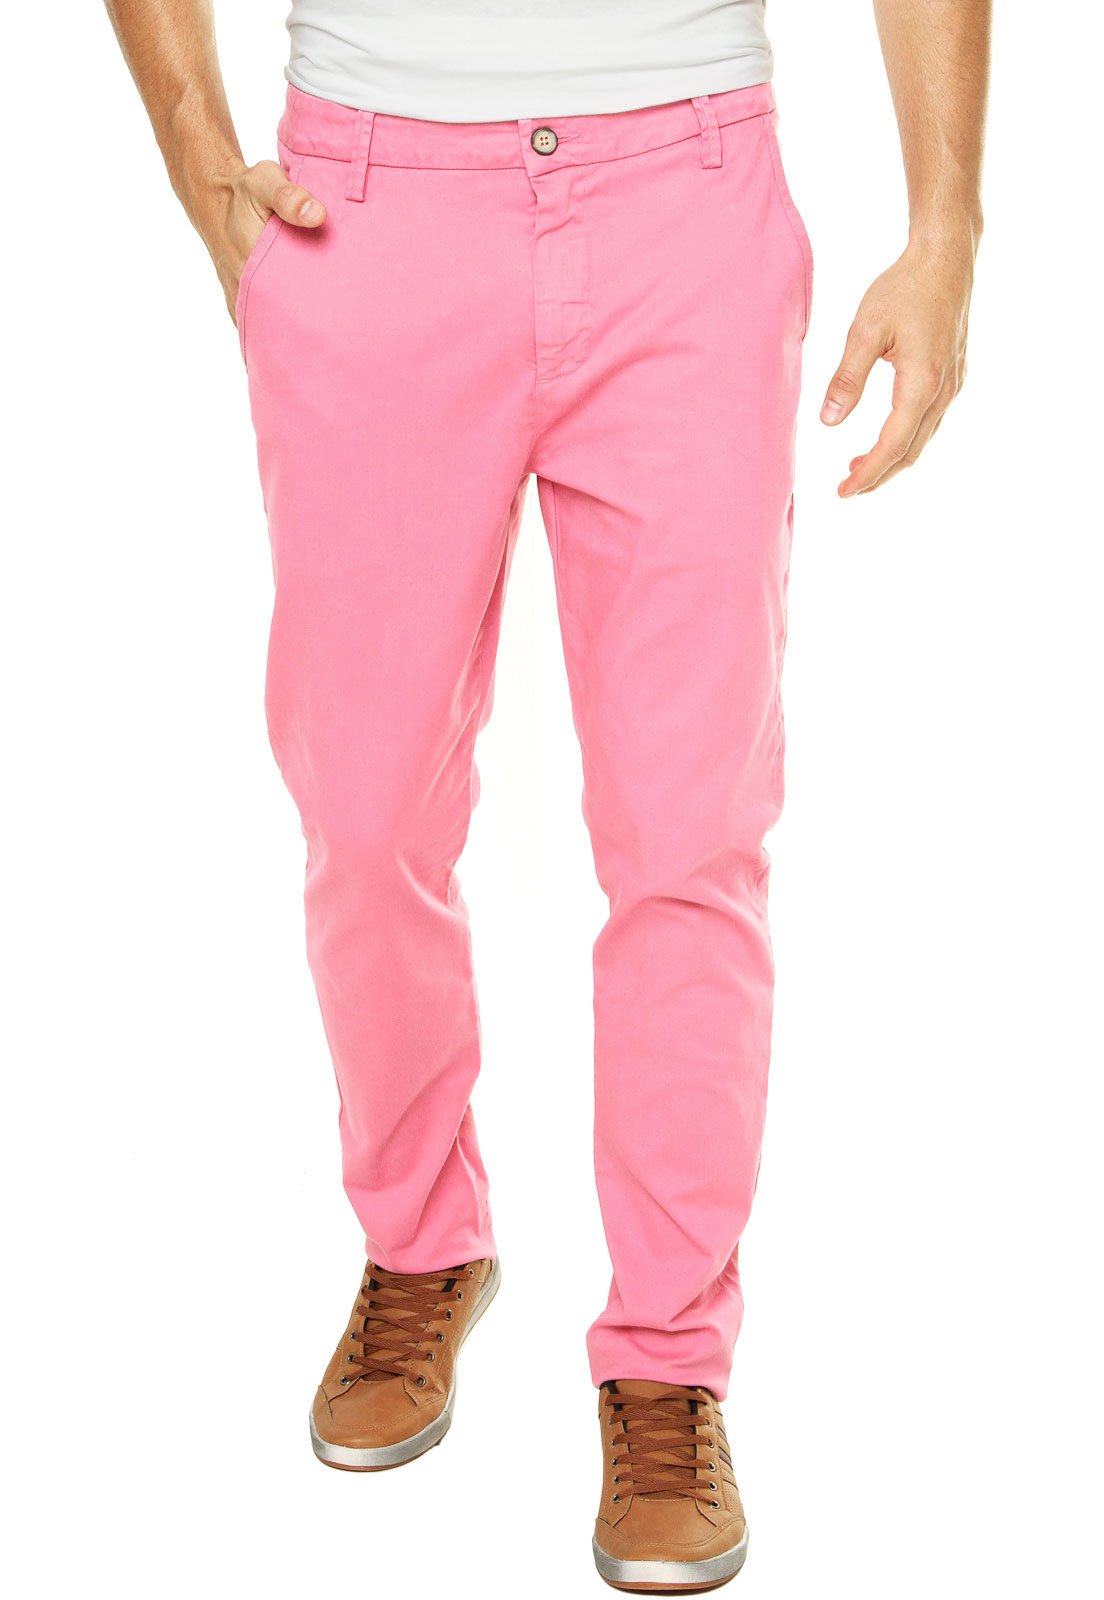 calca rosa masculina